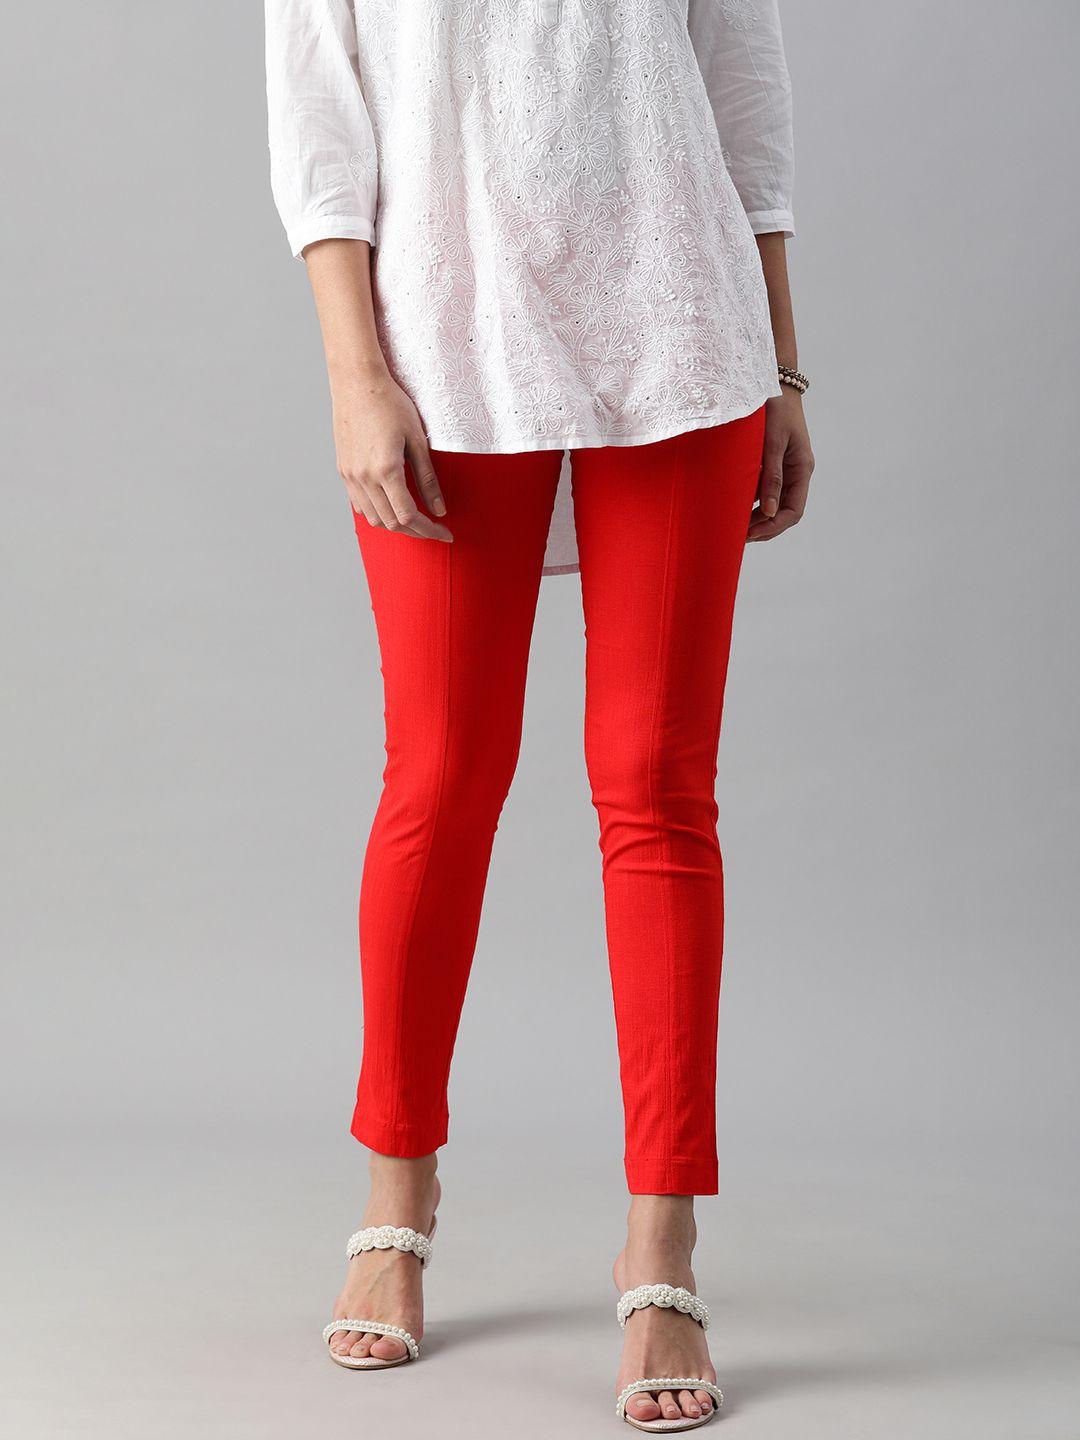 etiquette women red slim fit cigerette trousers